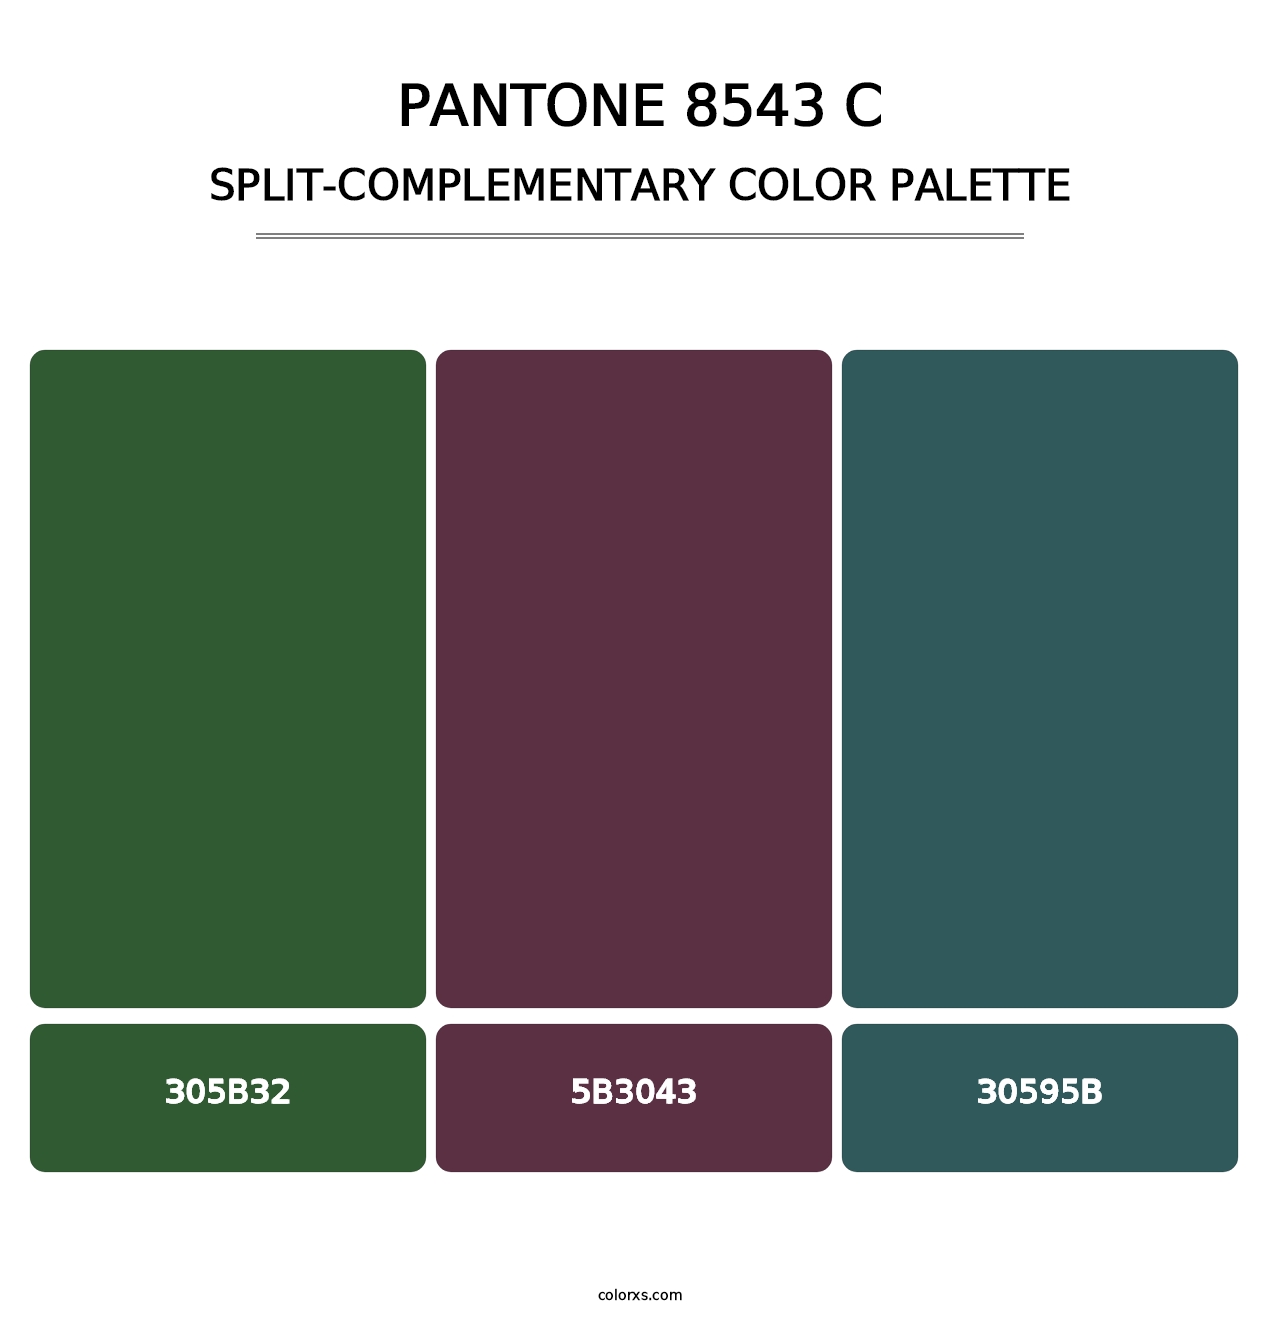 PANTONE 8543 C - Split-Complementary Color Palette